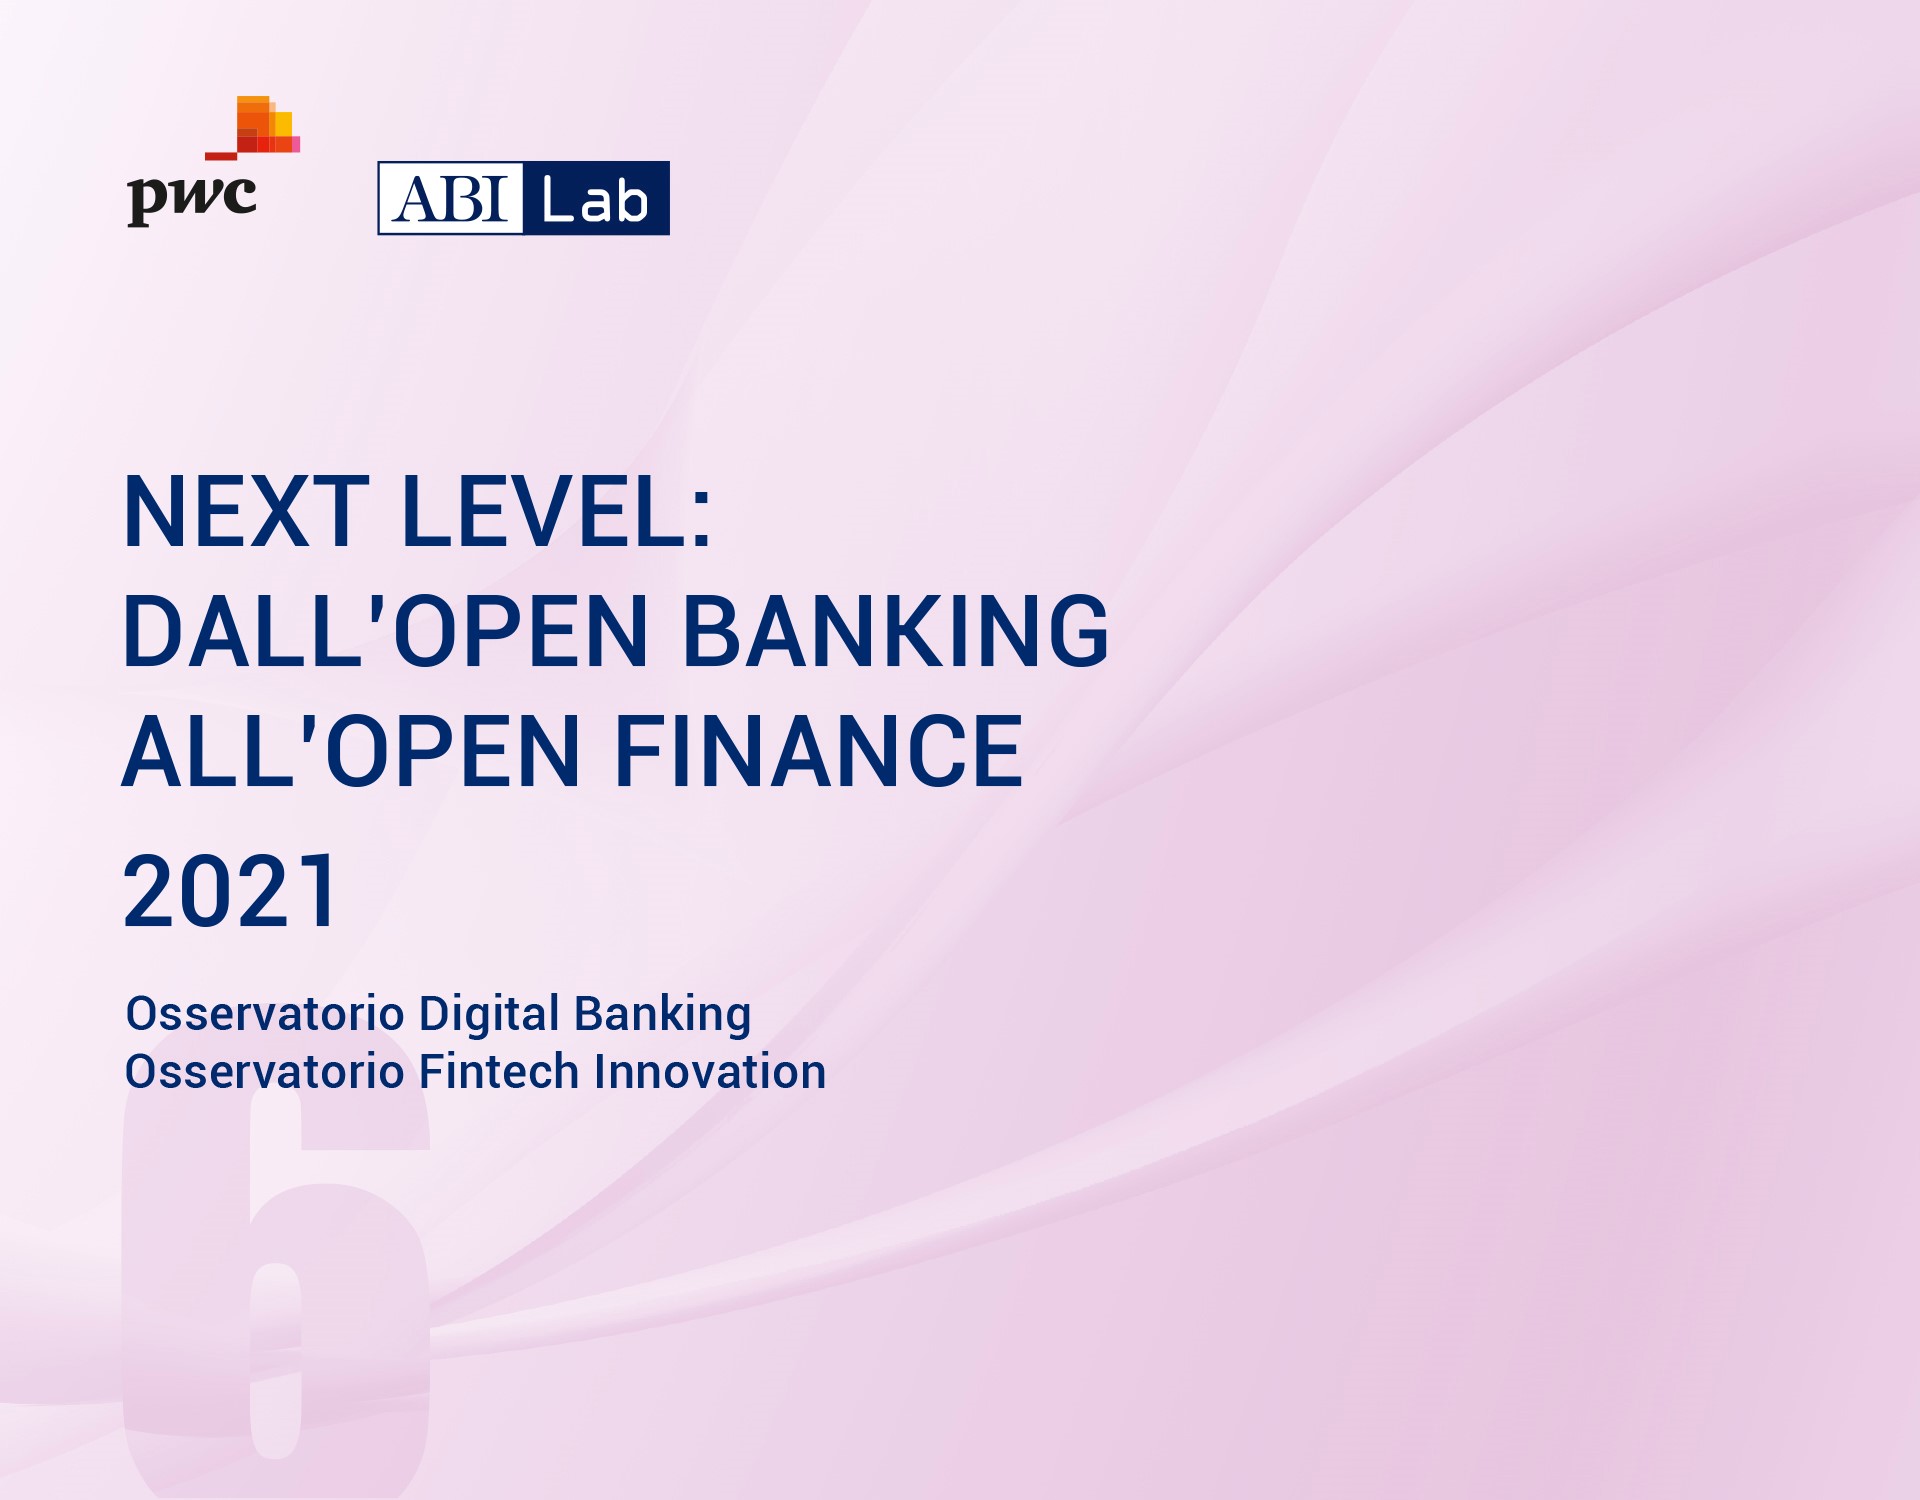 Rapporto ABI Lab PwC 2021 - Dall'Open Banking all'Open Finance